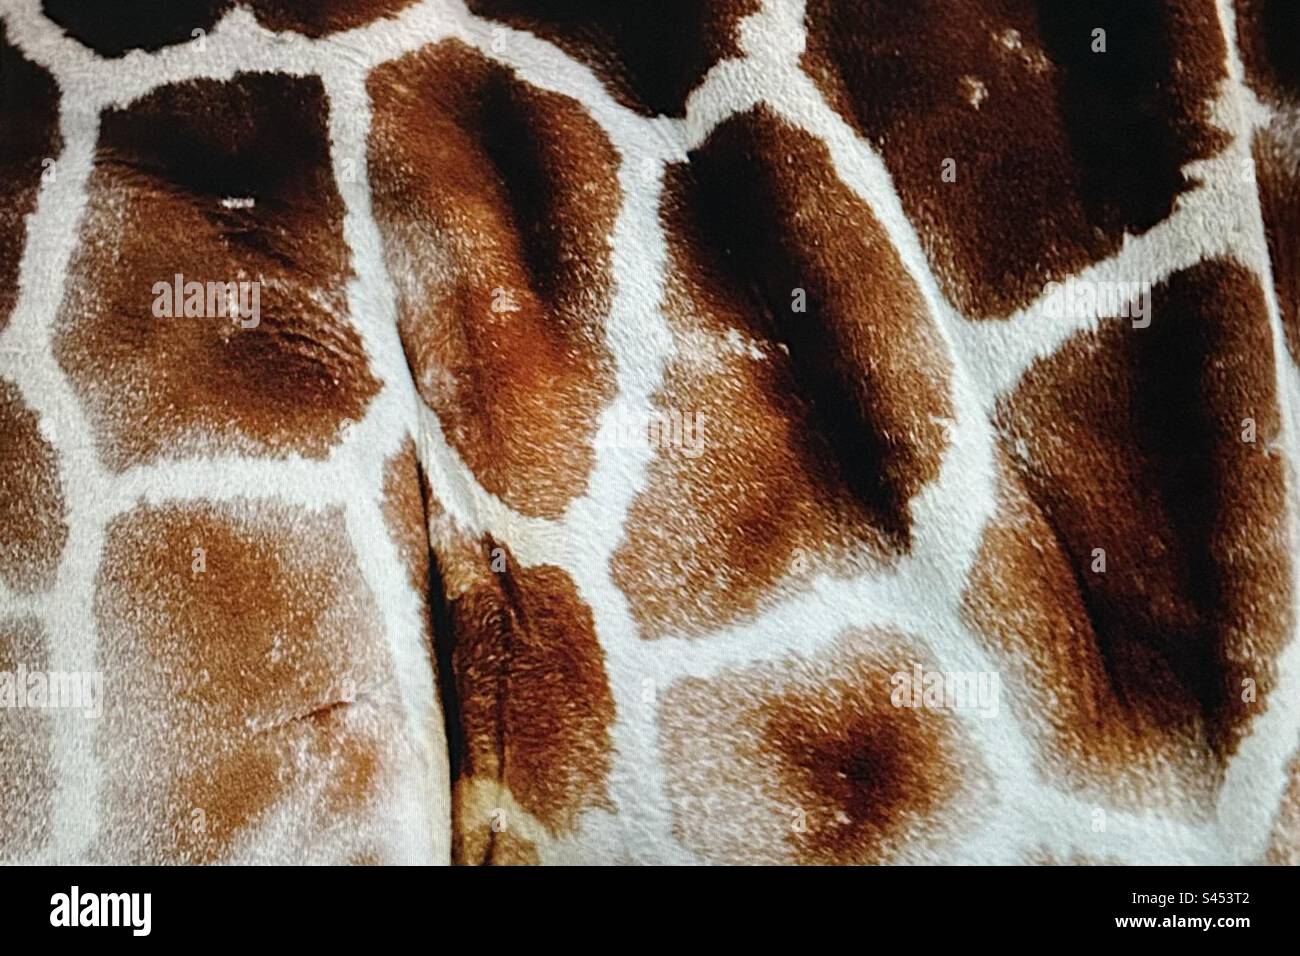 Motifs dans la nature, taches sur une girafe, brun, blanc, faune, en captivité Banque D'Images